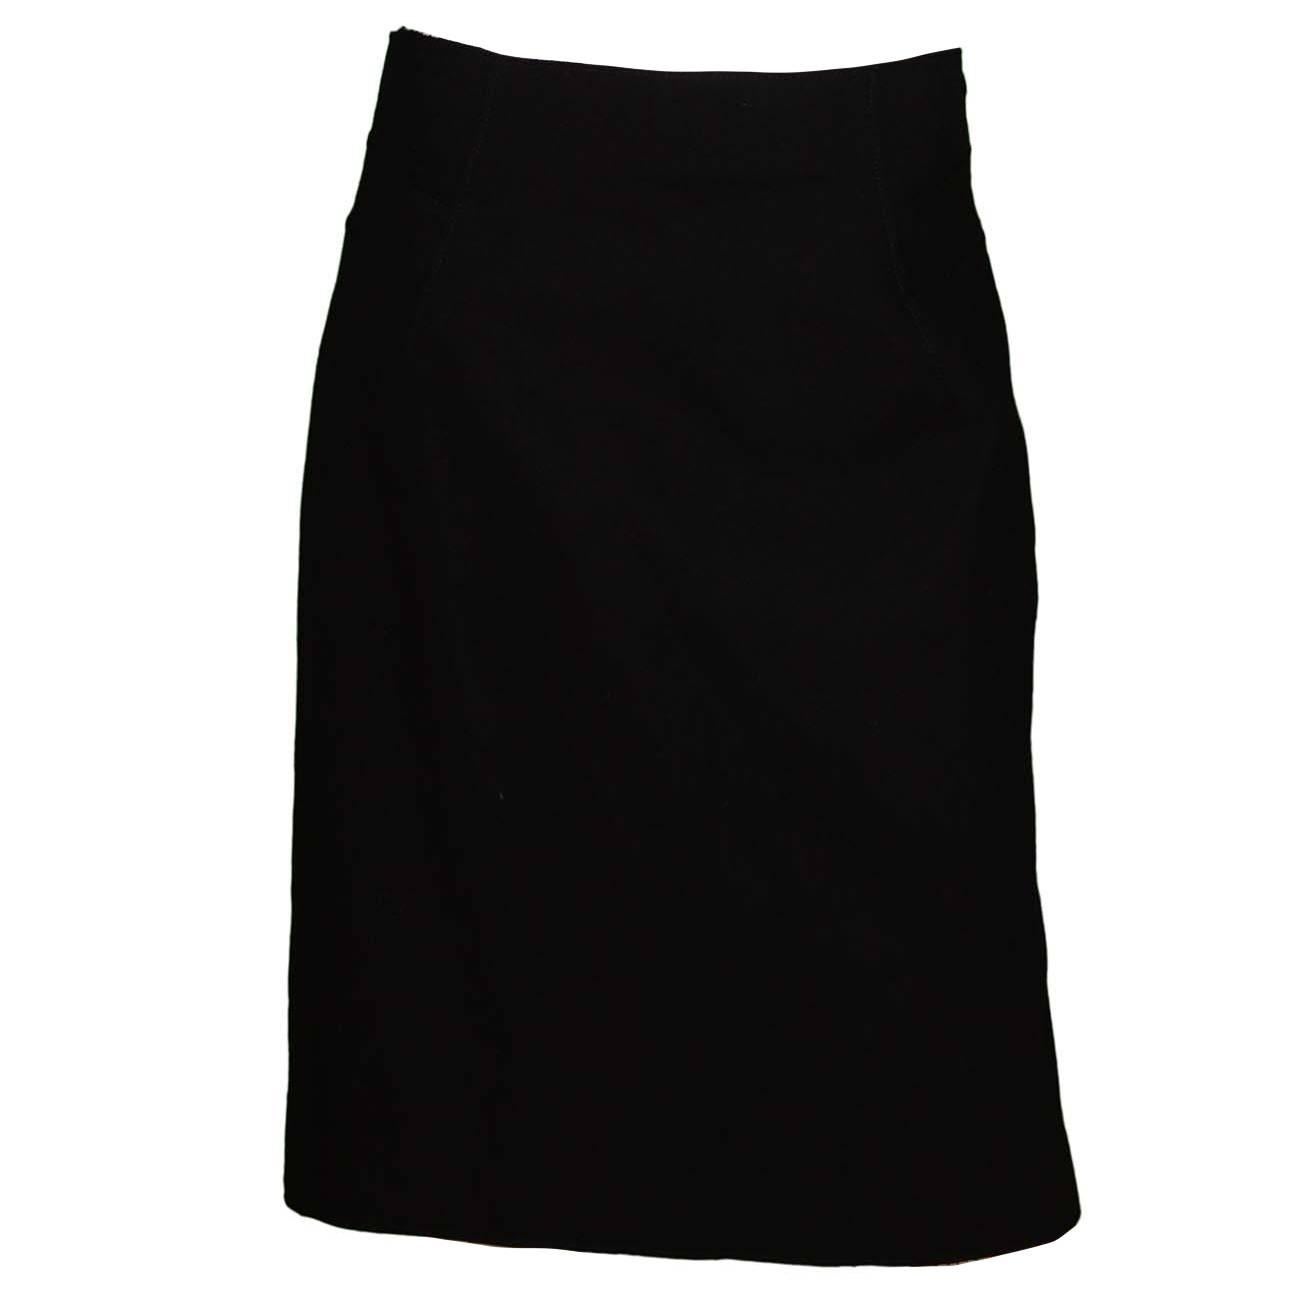 Alberta Ferretti Black Wool Skirt sz 8